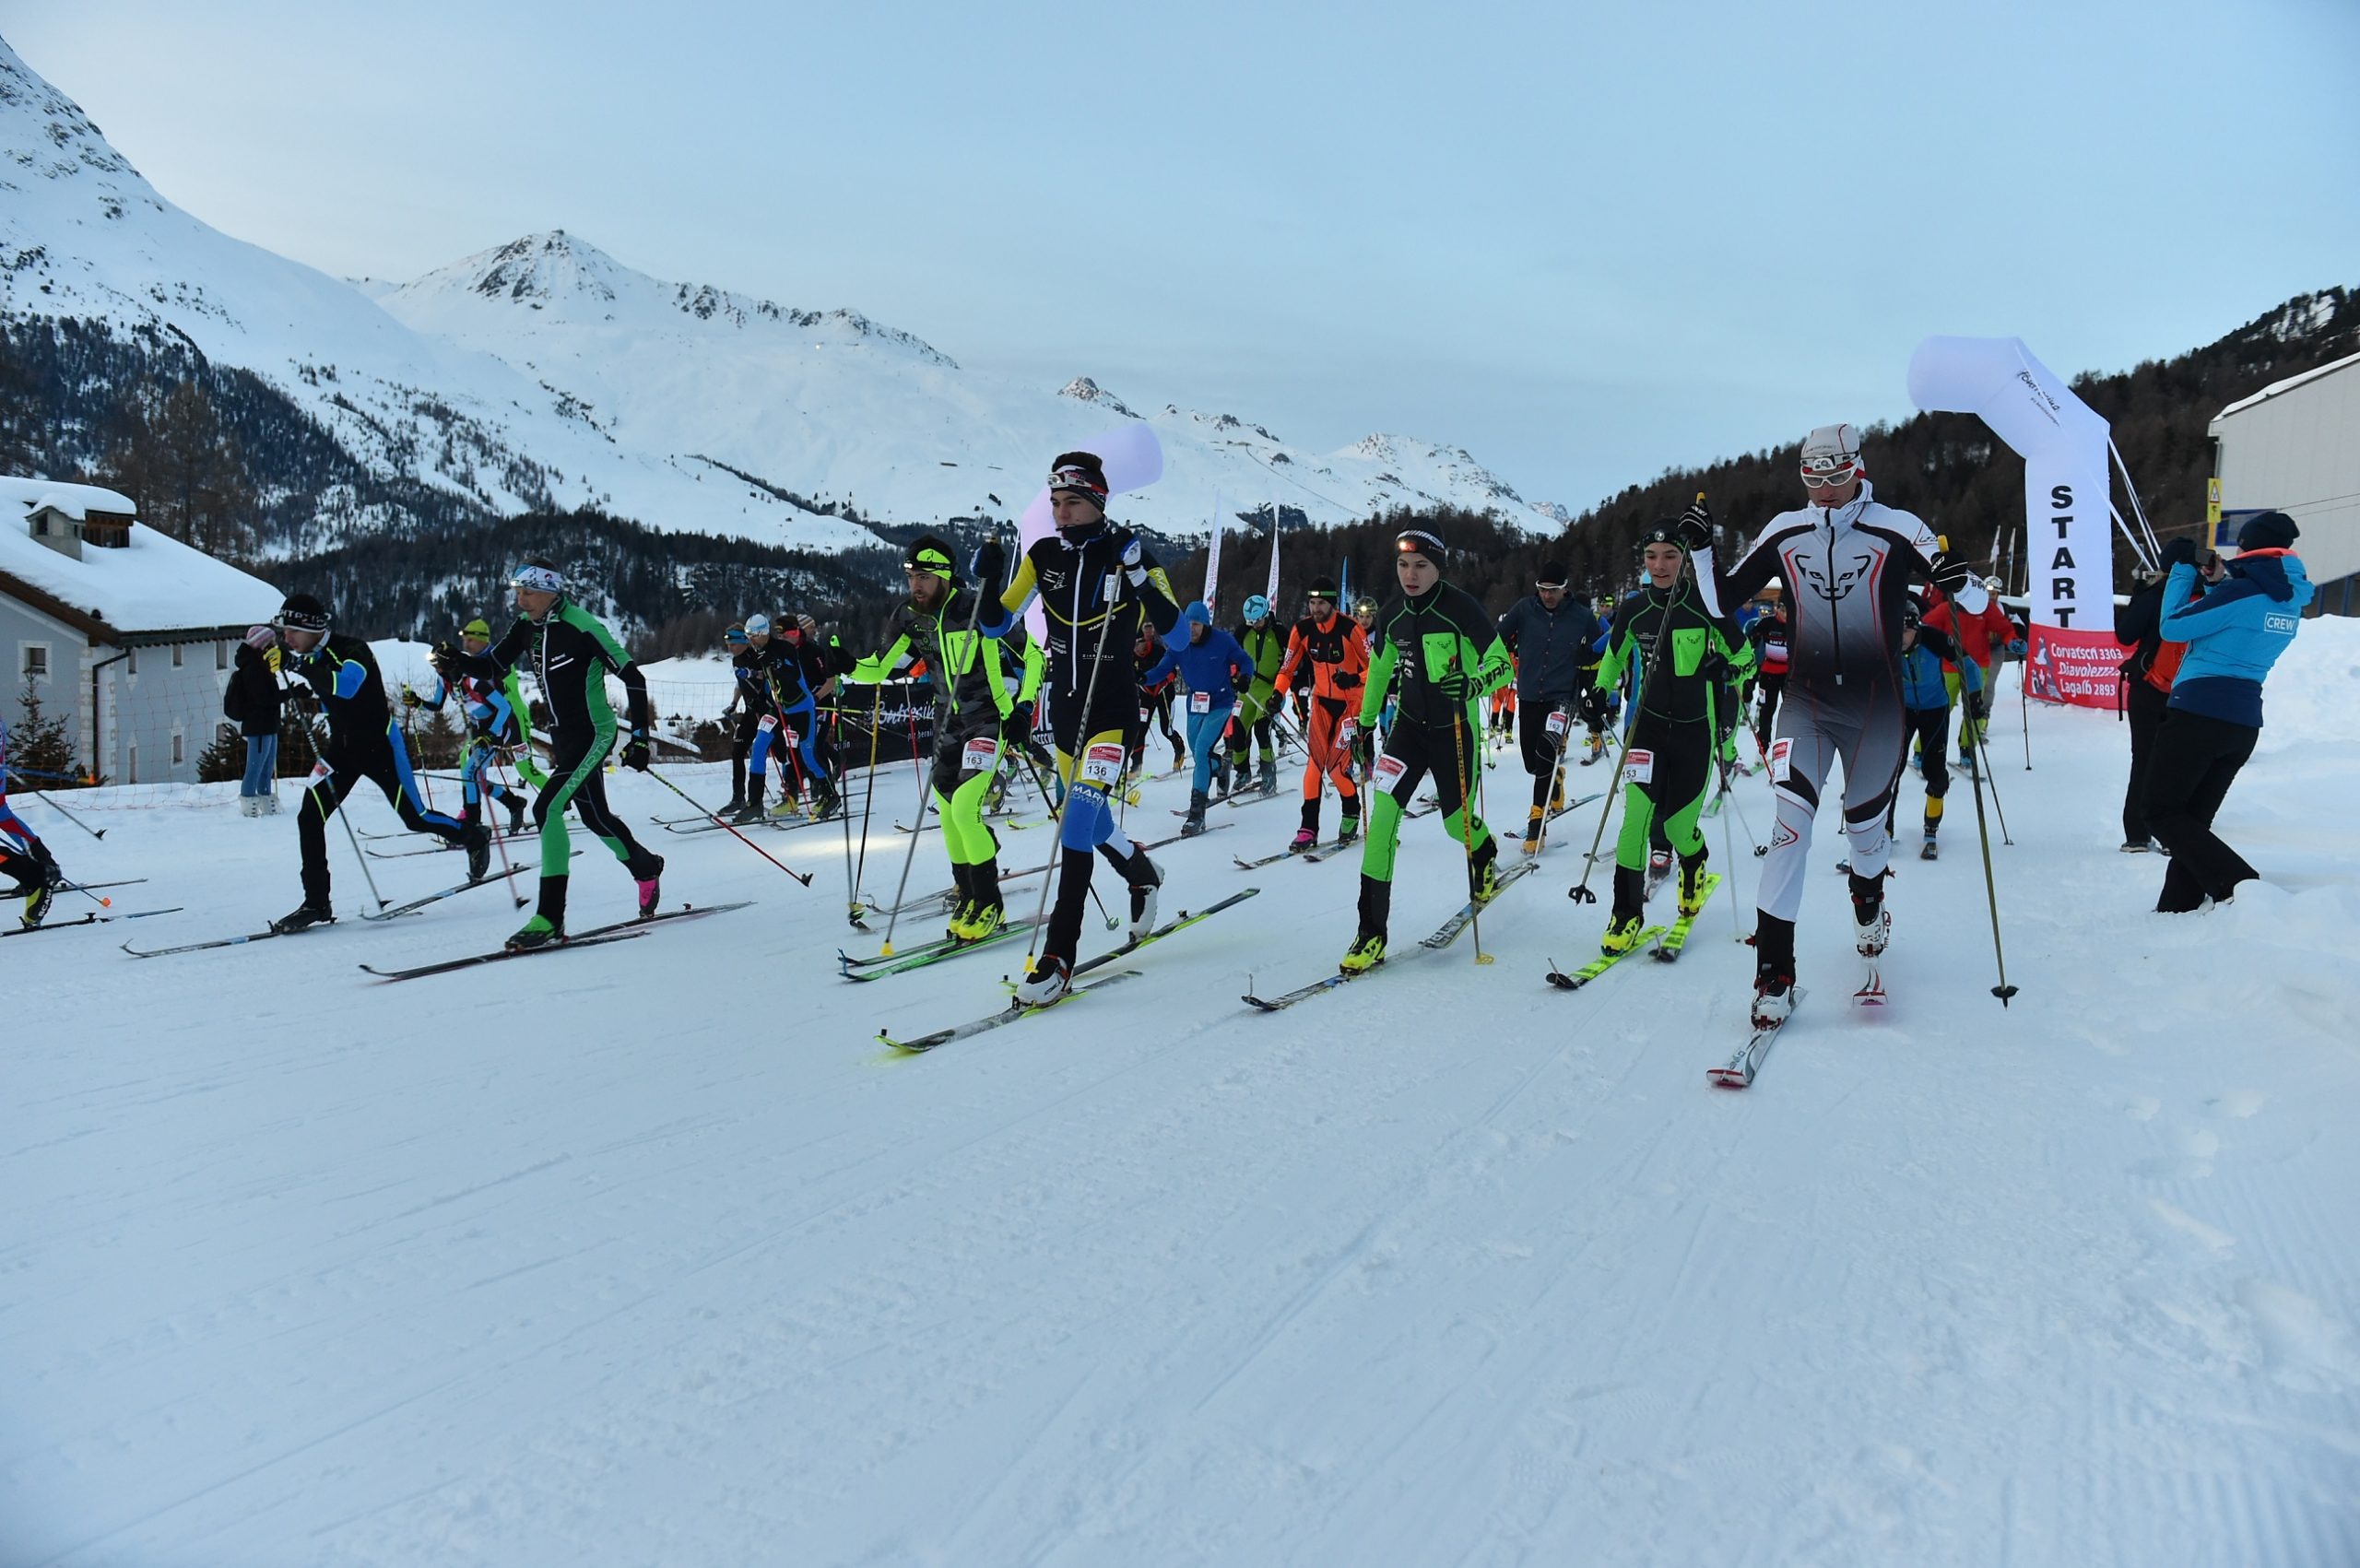 3-Summits Corvatsch - 2019
Skitourenwettkampf mit Höhenunterschied: 837 hm, Distanz: 4 km
https://www.3-summits.ch